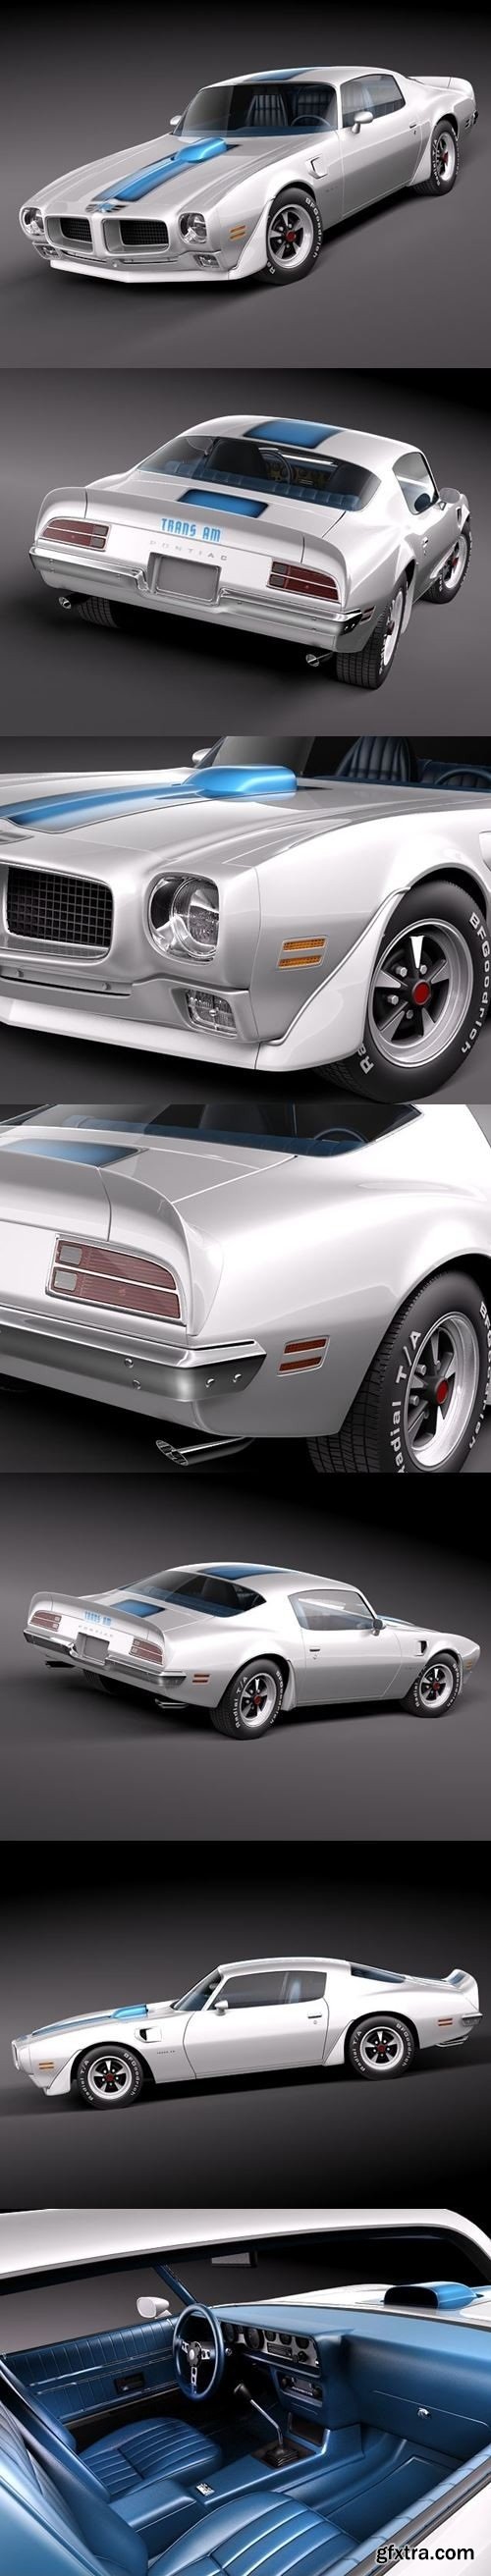 Pontiac Firebird Trans Am 1970 3D Model